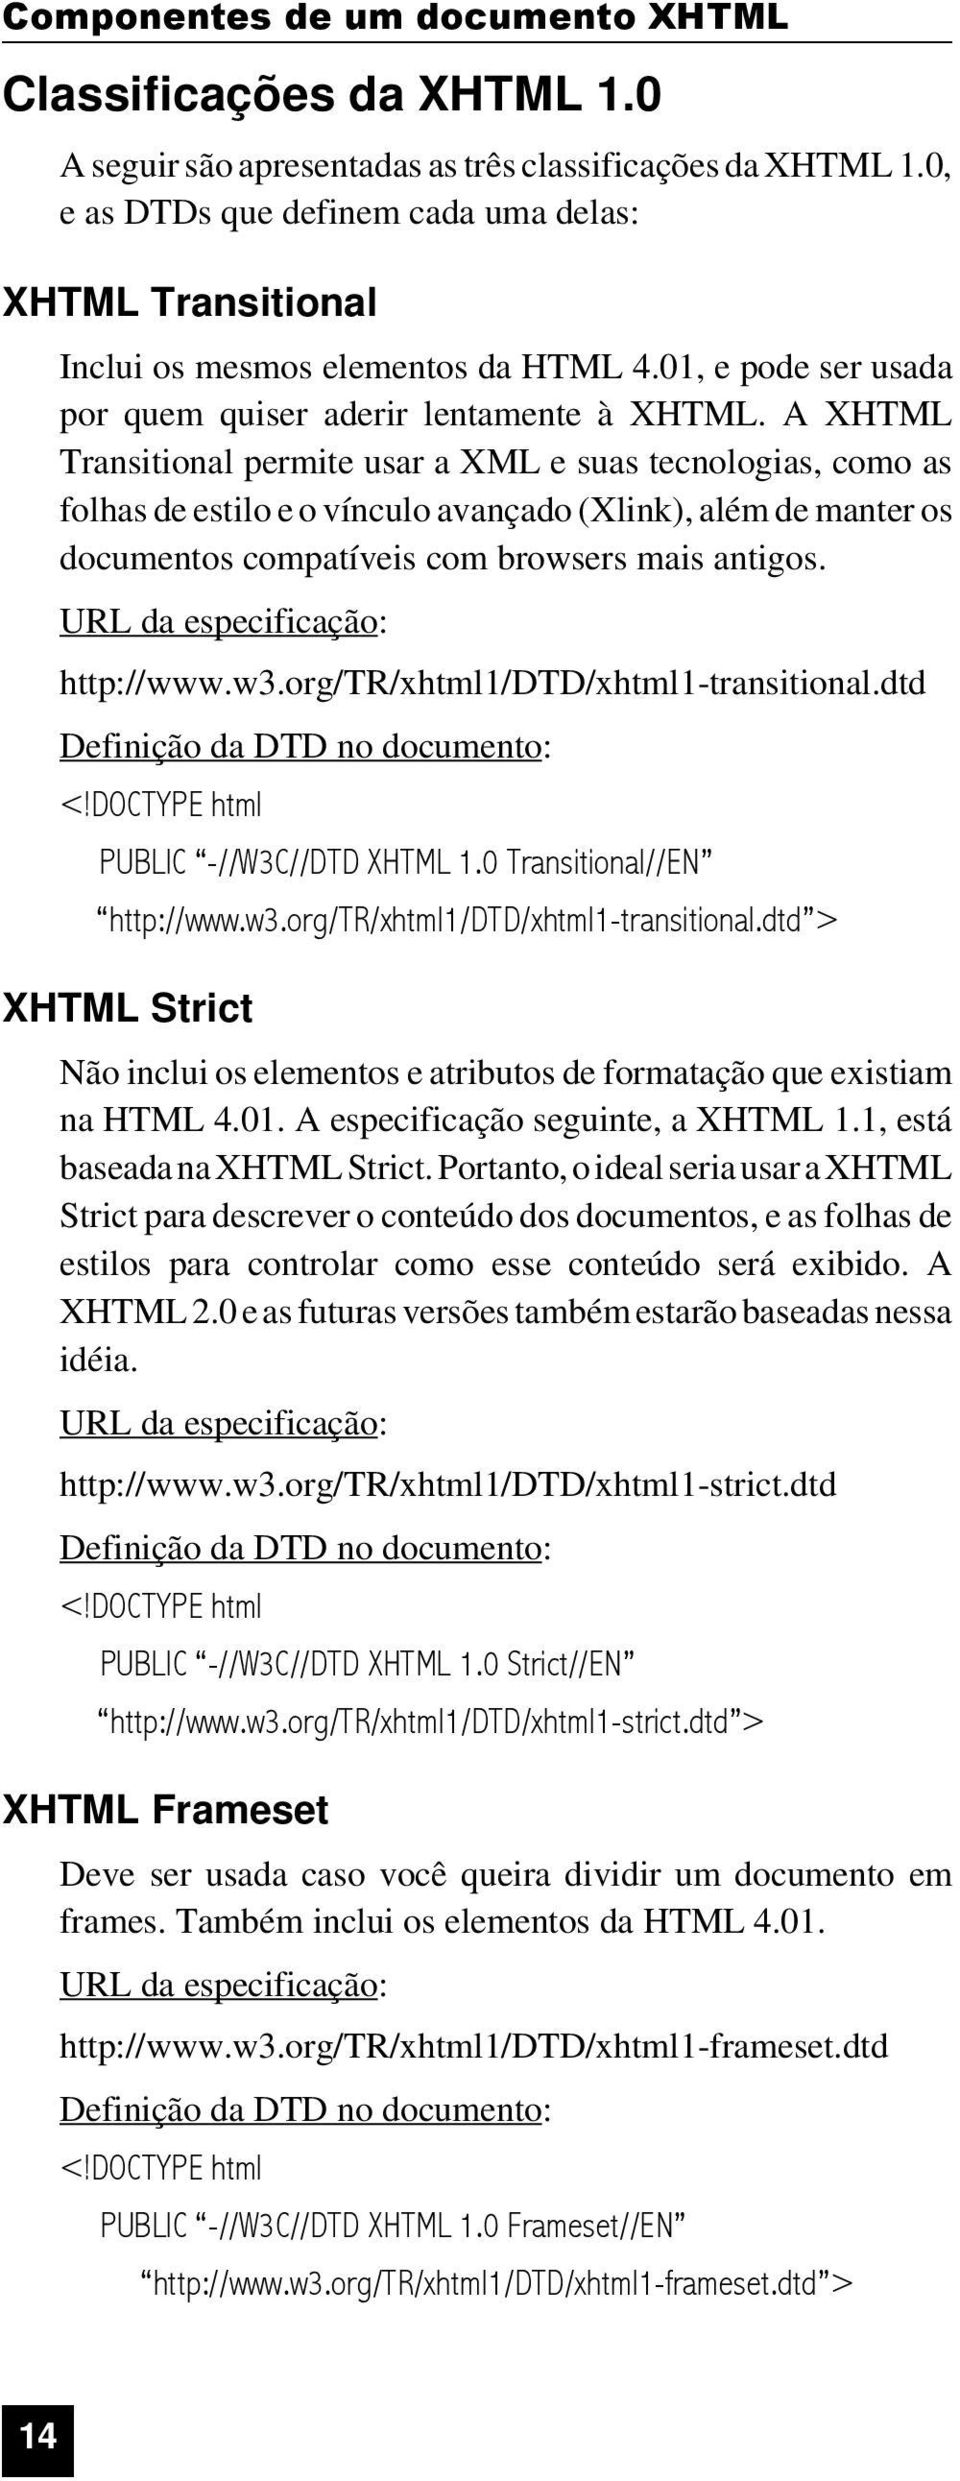 A XHTML Transitional permite usar a XML e suas tecnologias, como as folhas de estilo e o vínculo avançado (Xlink), além de manter os documentos compatíveis com browsers mais antigos.